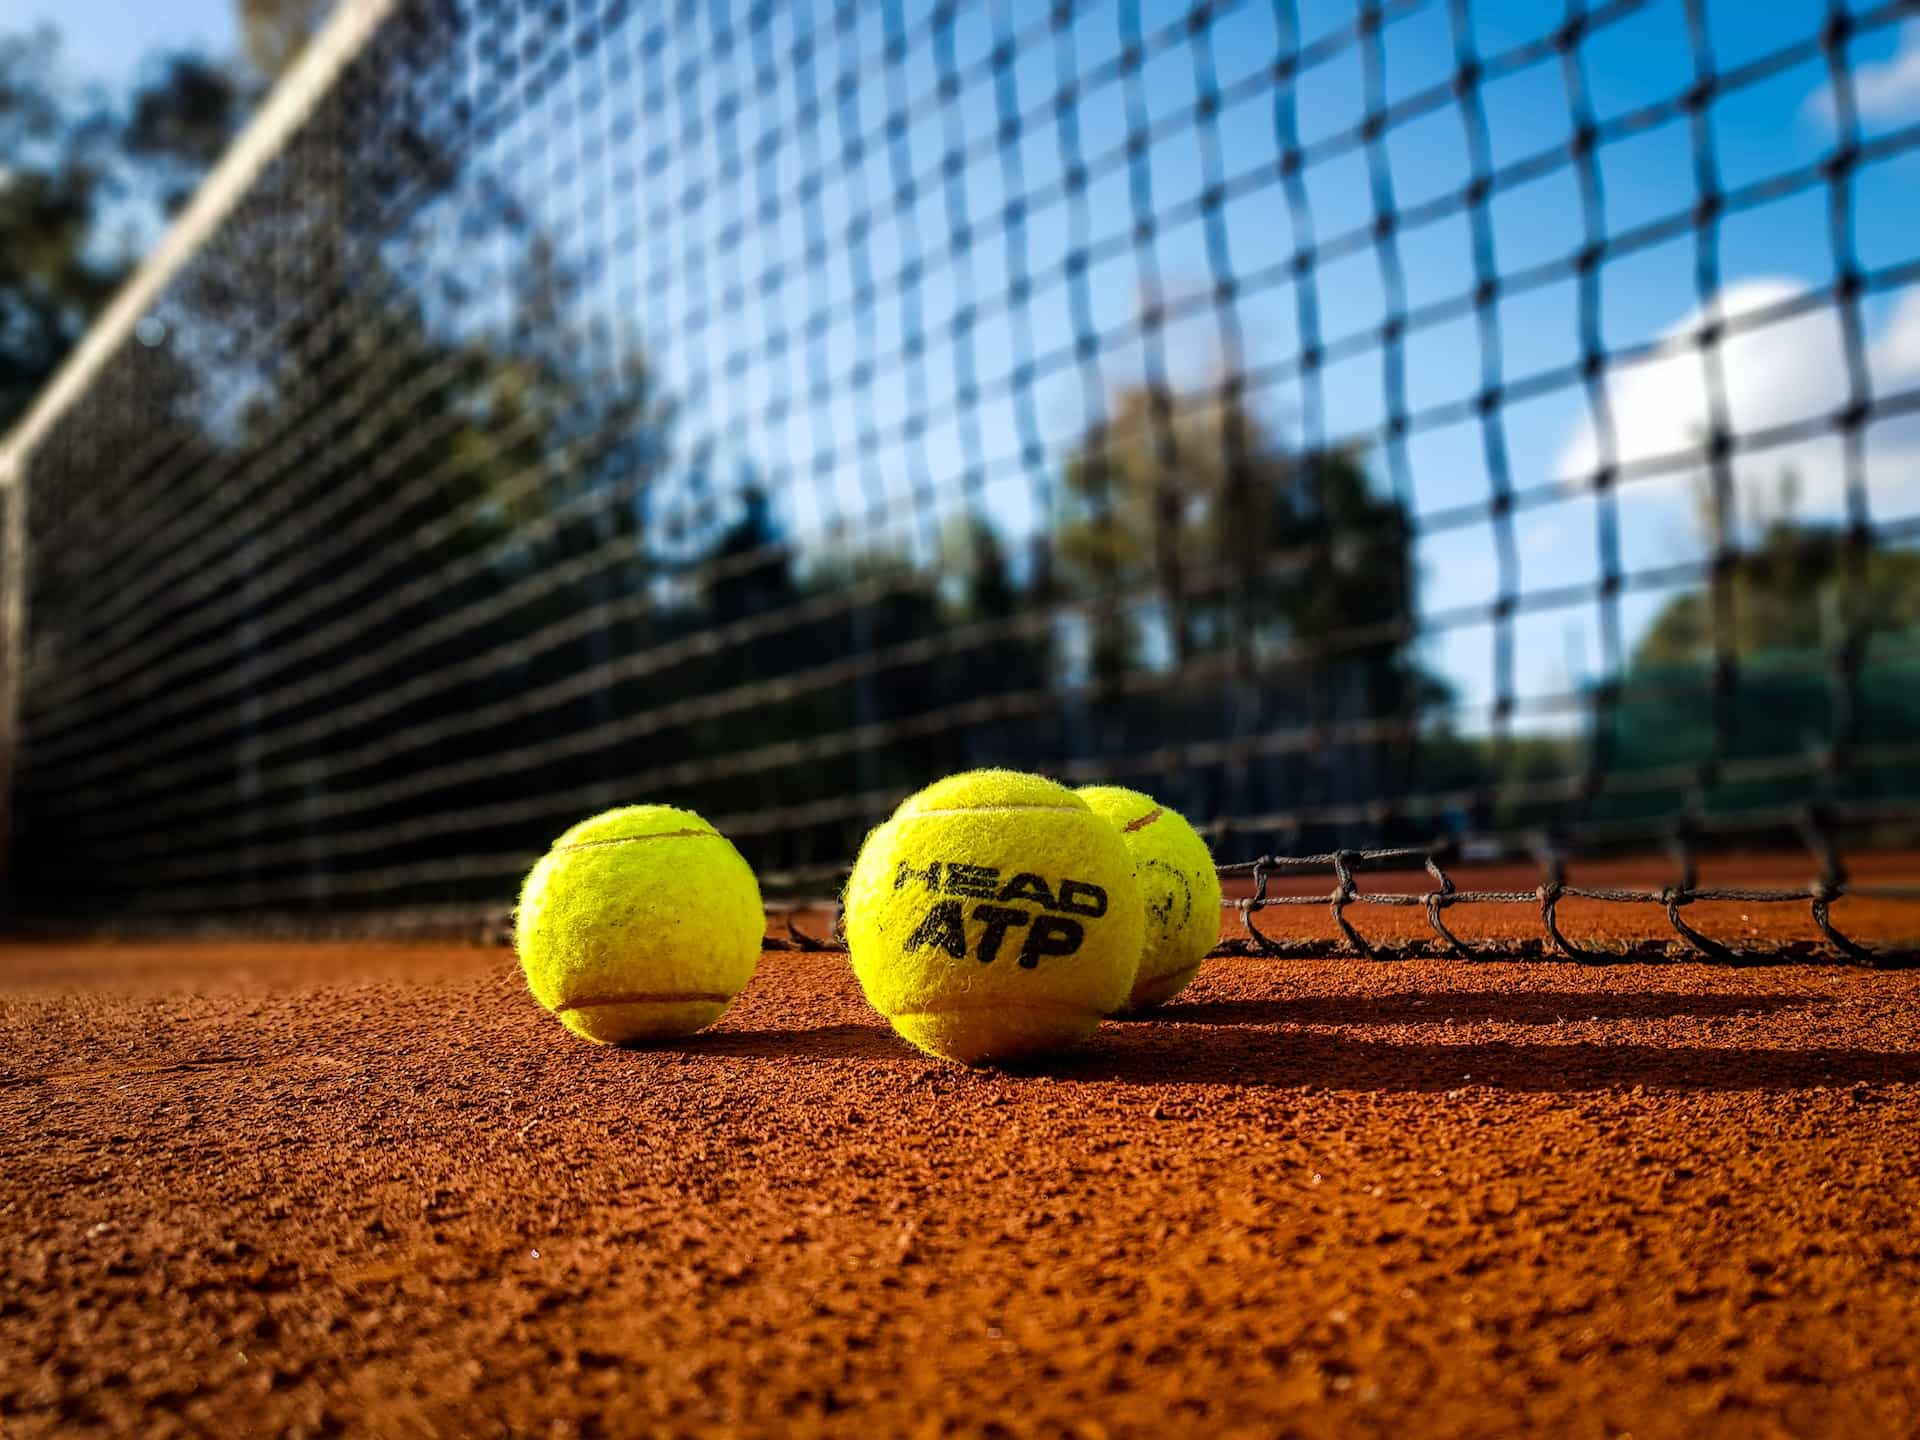 Offizielle ATP-Bälle liegen vor einem Tennisnetz